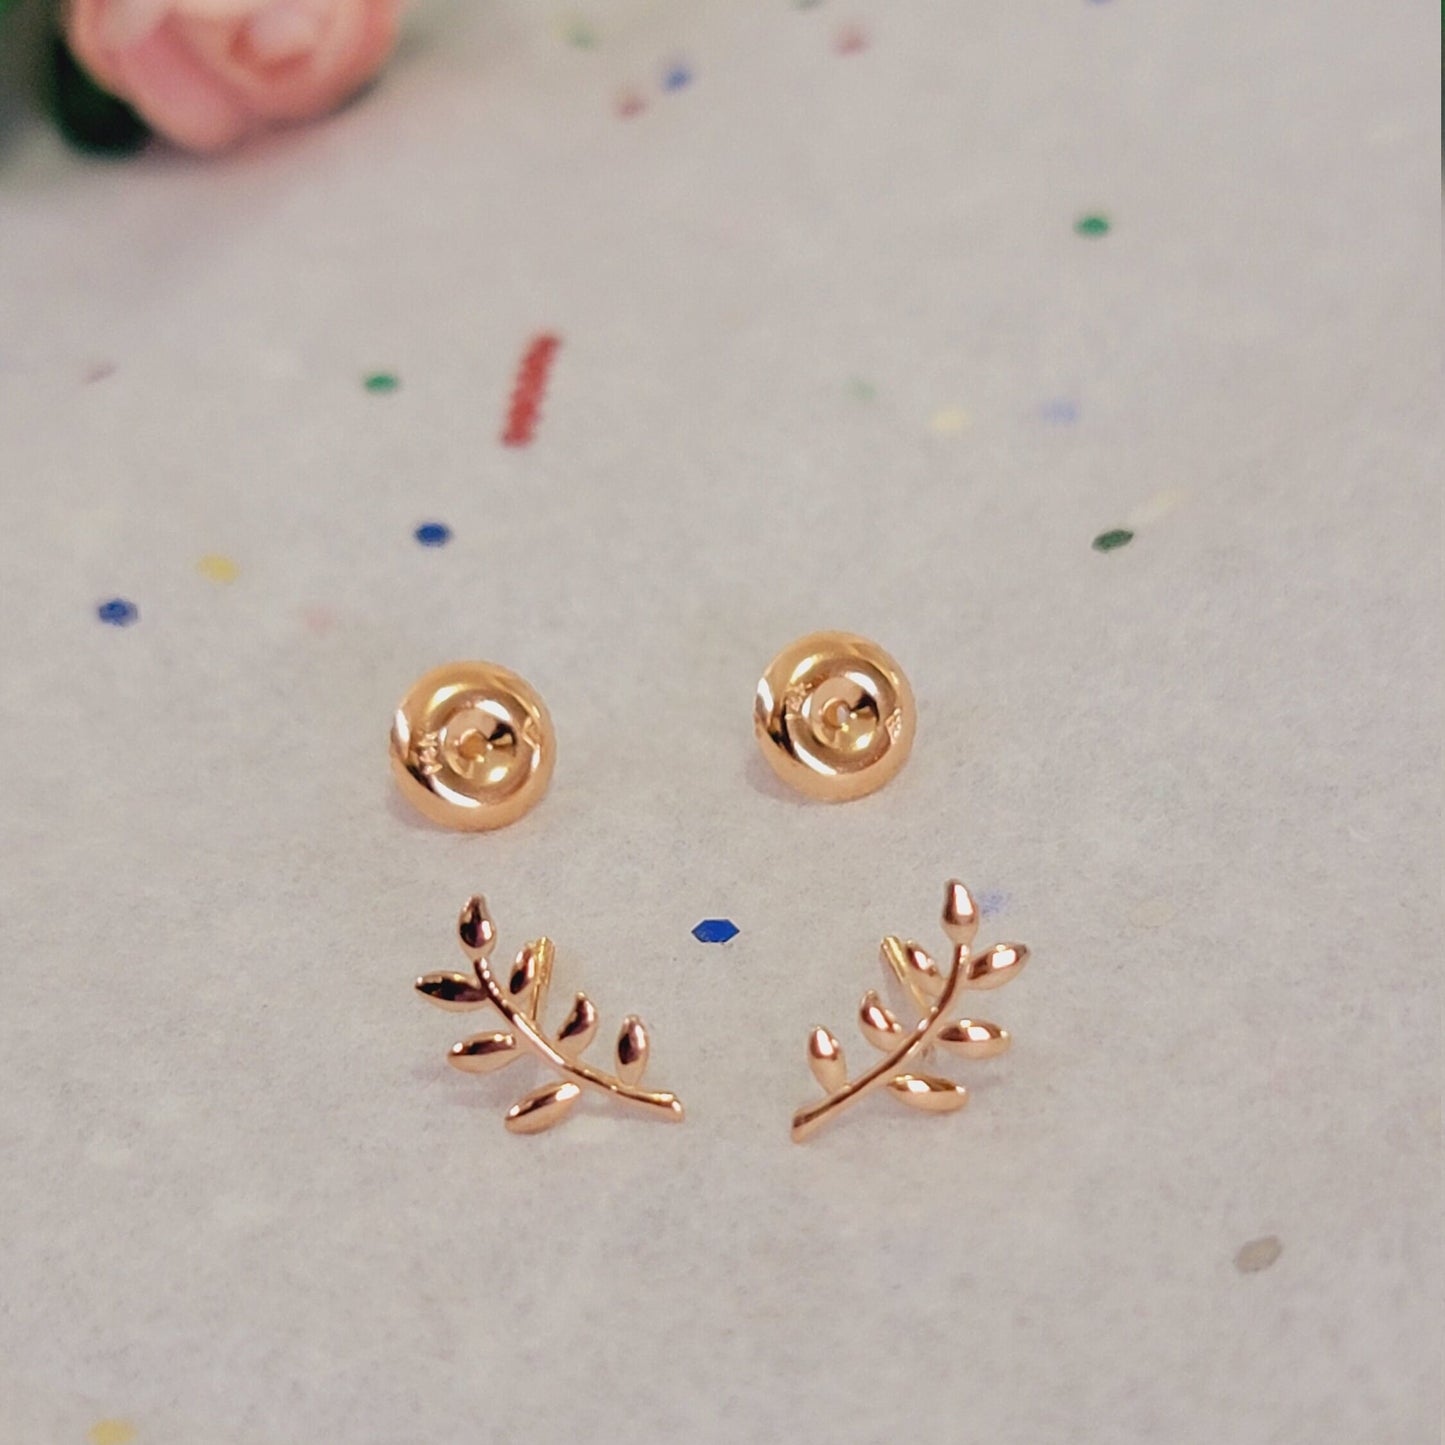 14k Gold Leaf Branch Earrings